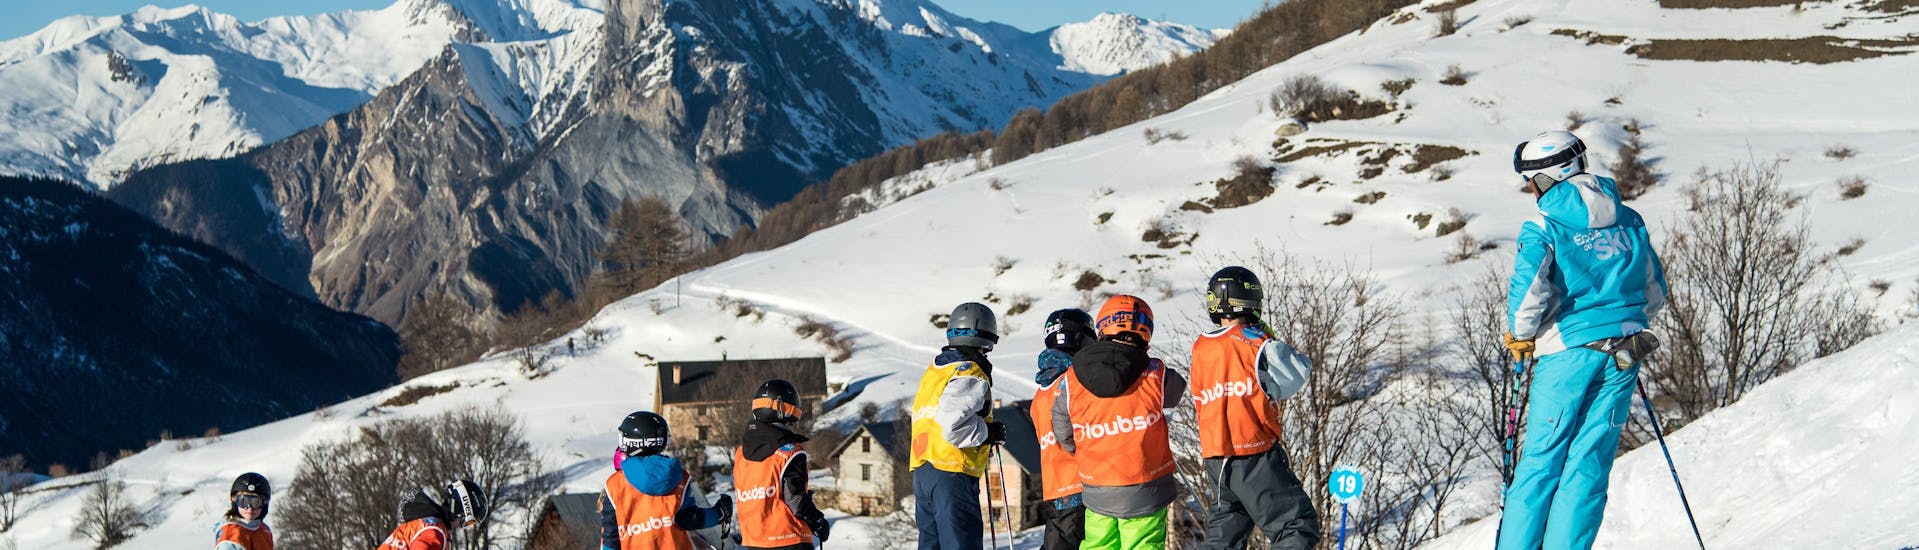 Pendant un cours de ski pour enfants de l'ESI Ski Family un groupe d'apprentis skieurs fait une pause sur les pistes du Grand Bornand.